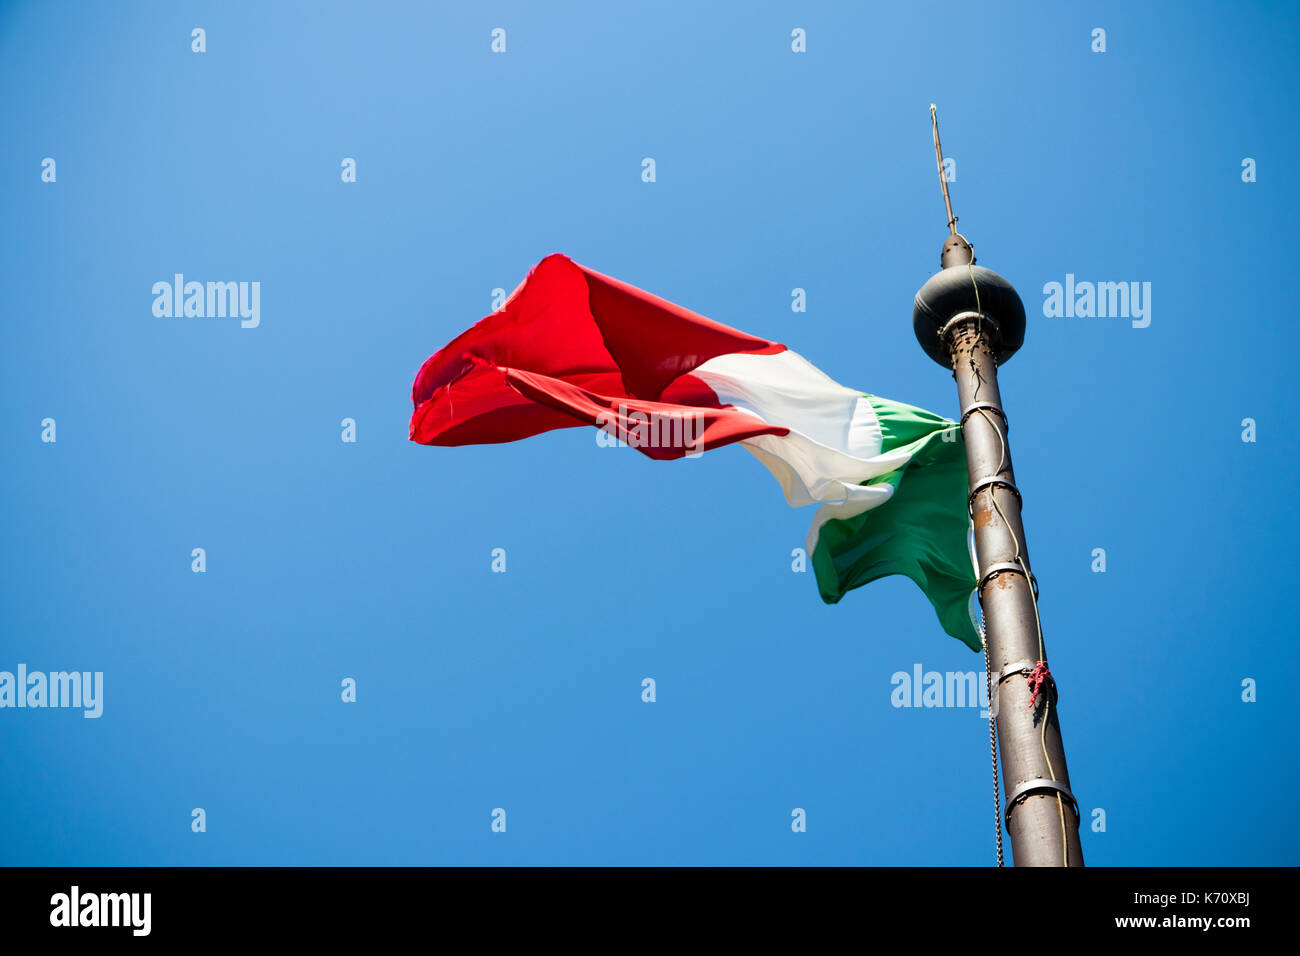 Eine wehende Flagge von Italien, auch als il tricolore bekannt, auf einem Mast über einen blauen Himmel Hintergrund Stockfoto